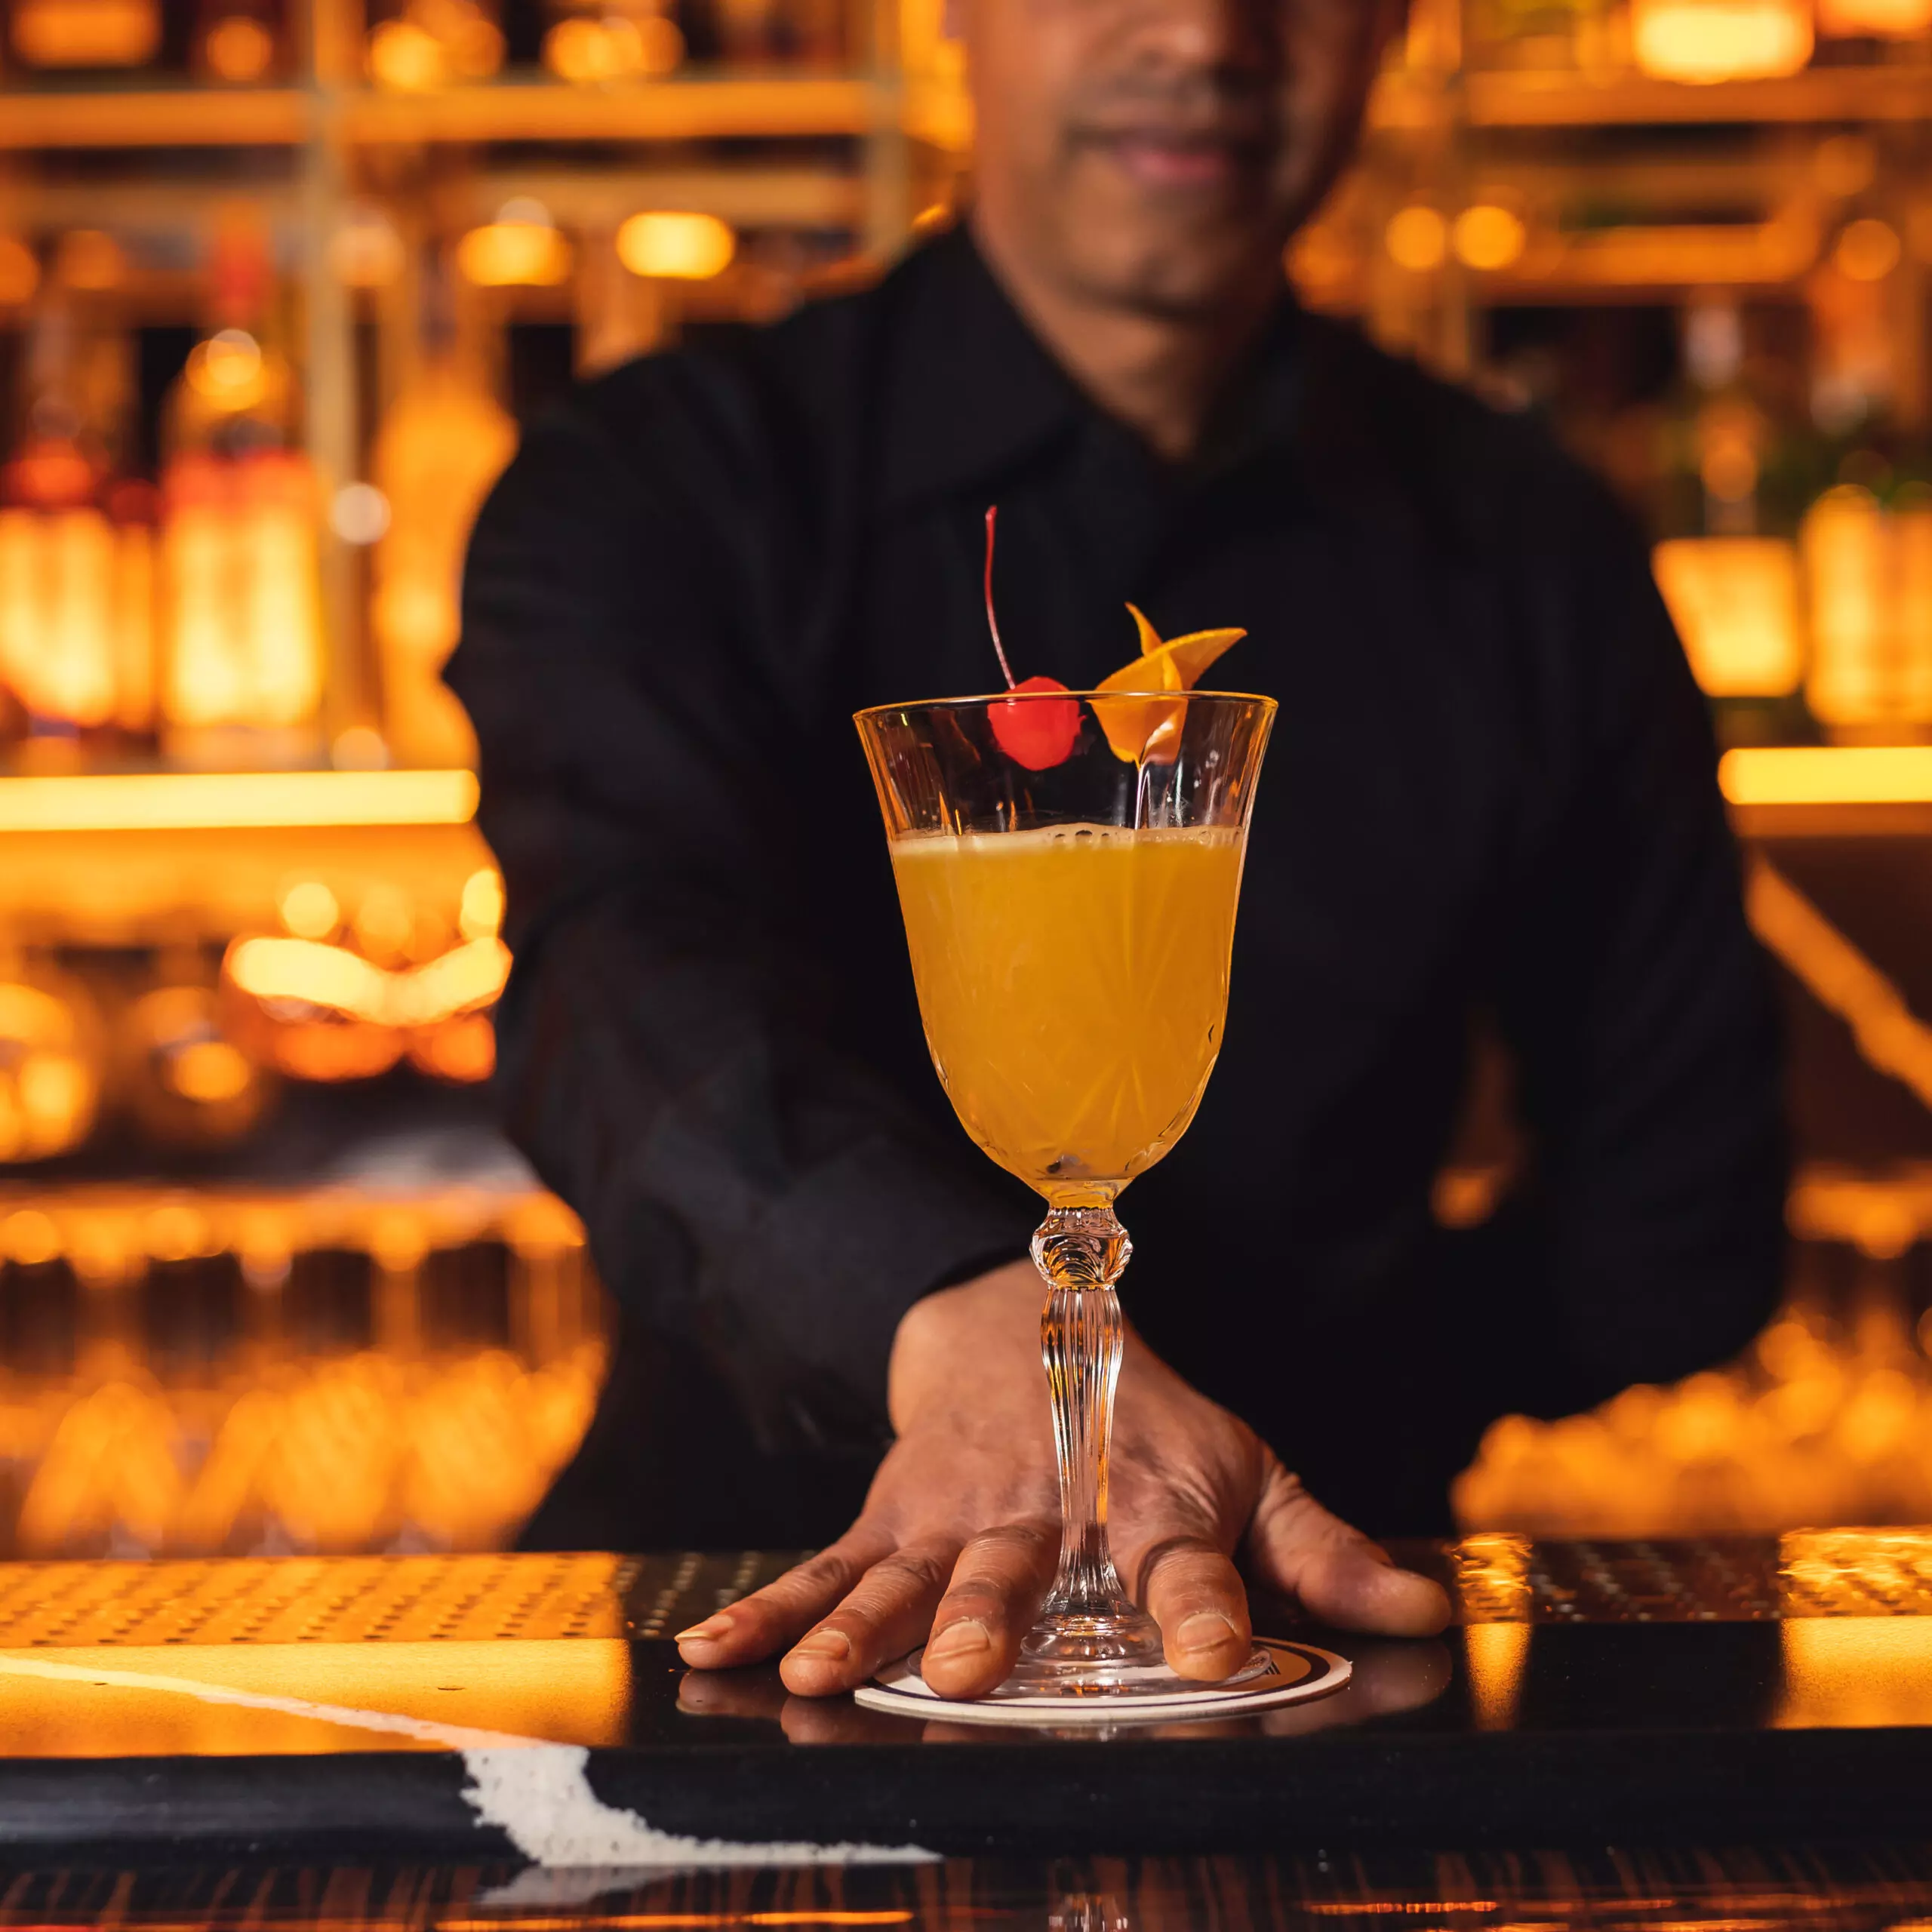 Un delizioso cocktail per l'aperitivo, servito in un bicchiere di vetro con una fetta di arancia fresca e una ciliegia come decorazione.